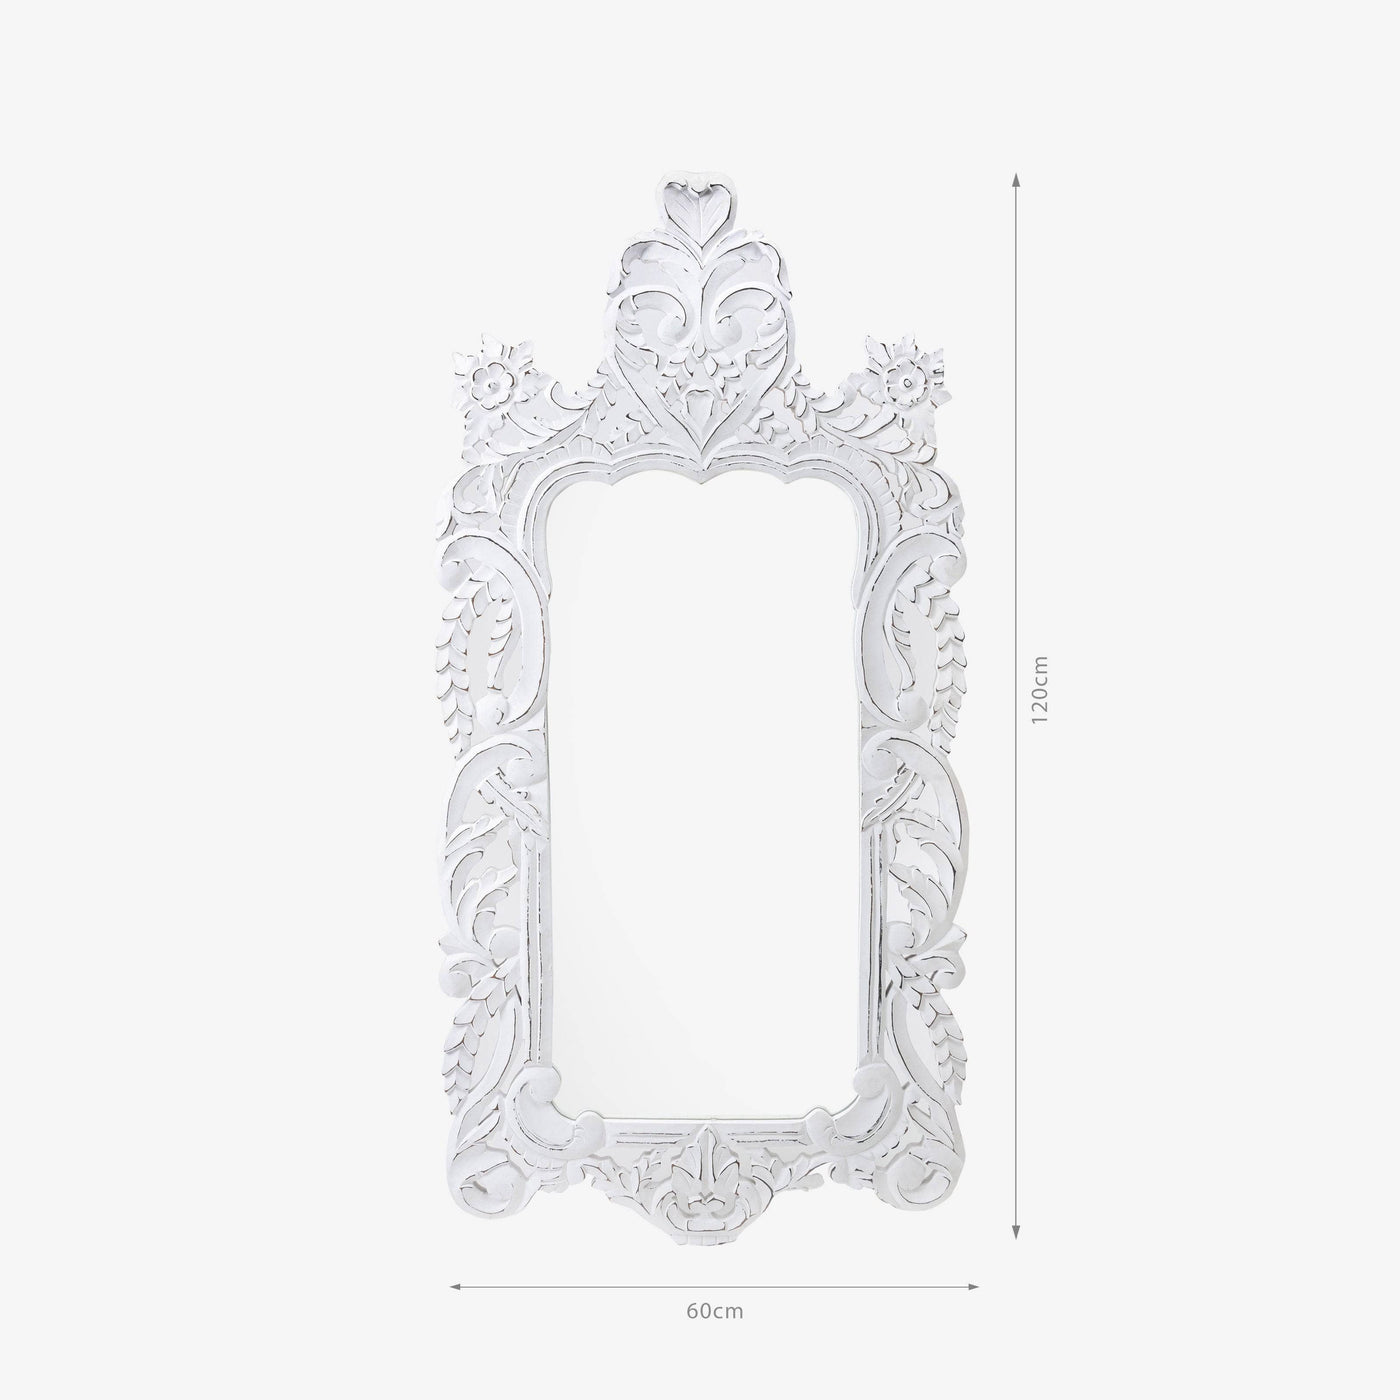 Esko Rectangular Wooden Mirror, Off-White, 60x120 cm - 2